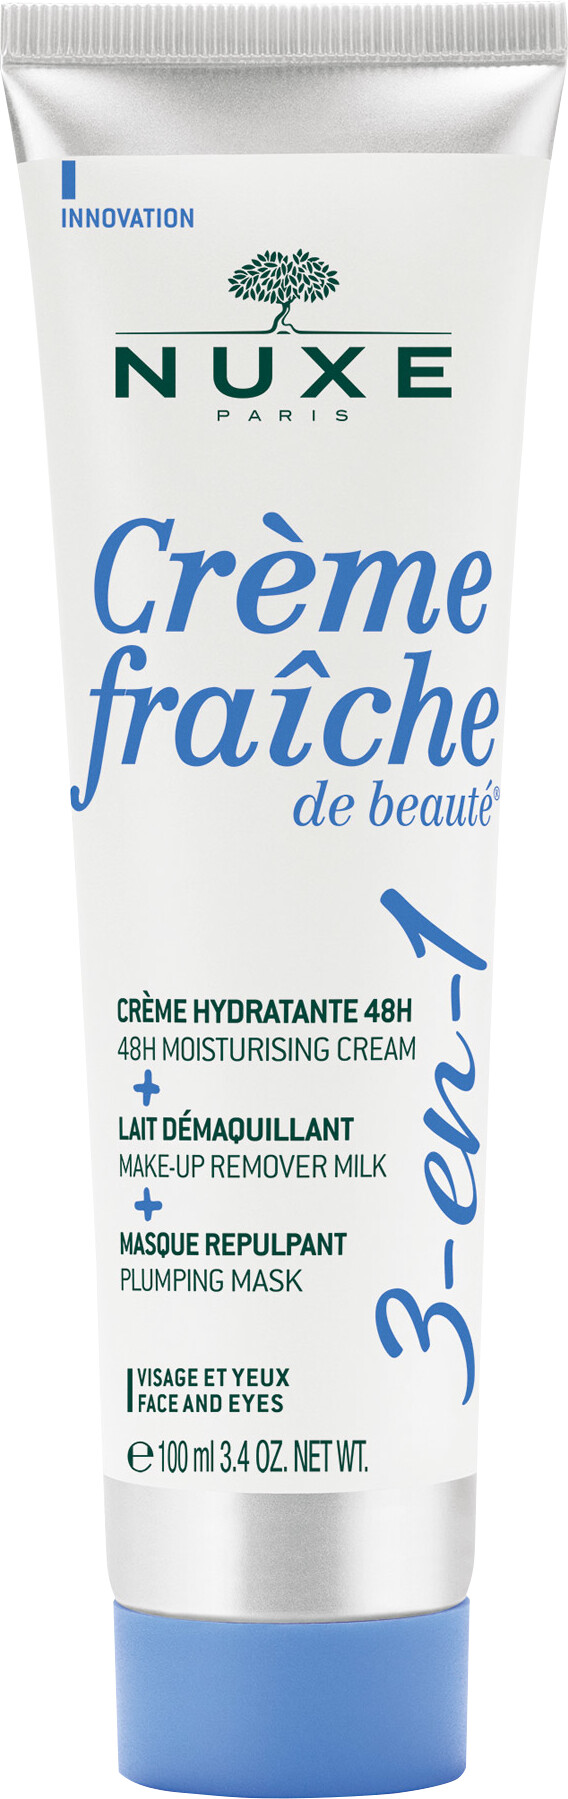 Nuxe Creme Fraiche de Beaute 3-in-1 Face and Eyes Cream 100ml